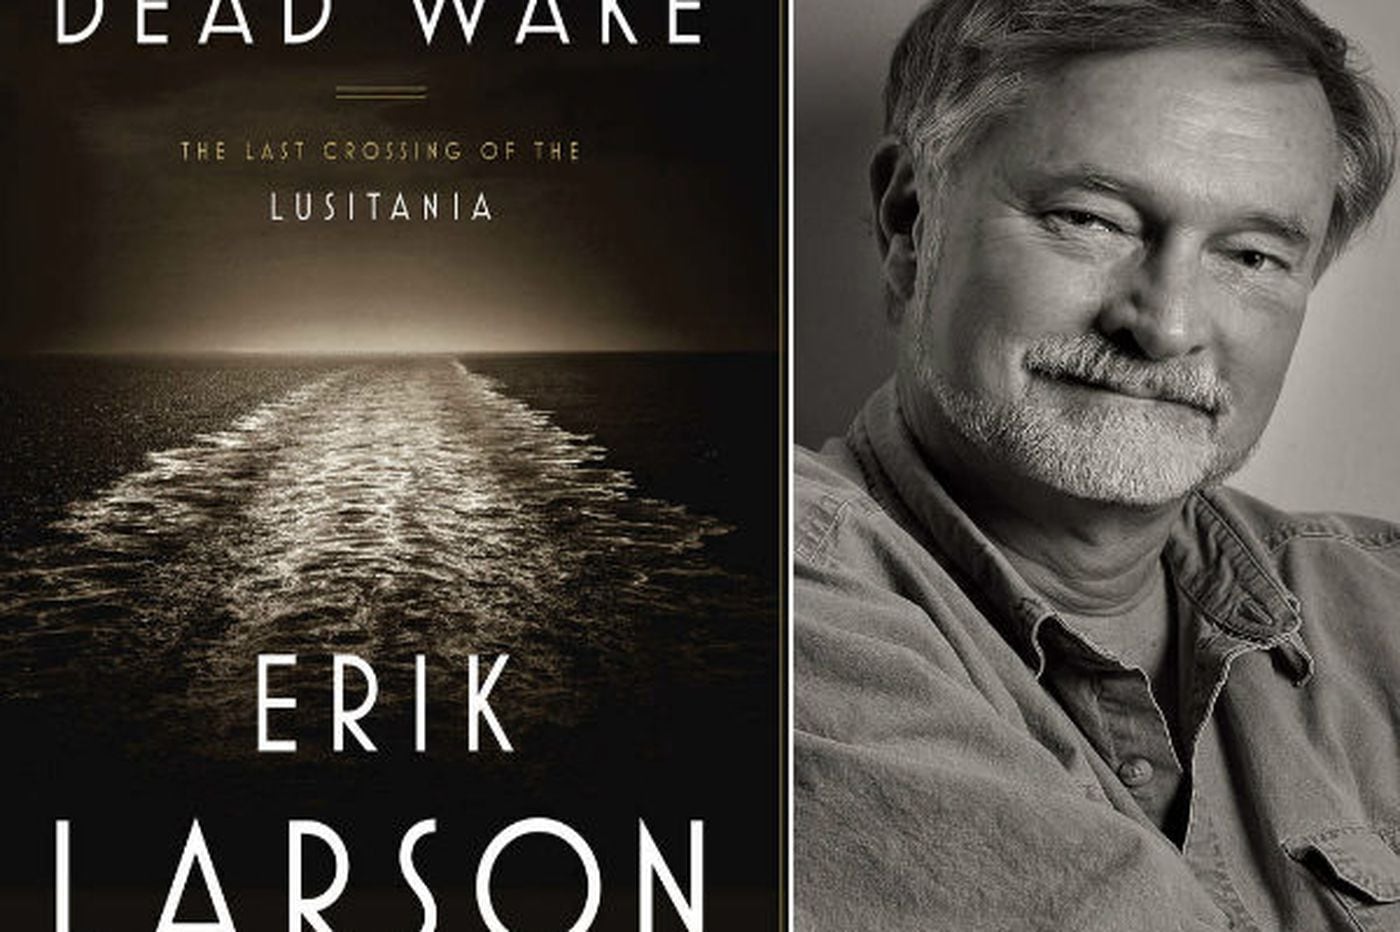 'Dead Wake' by Erik Larson probes the Lusitania sinking